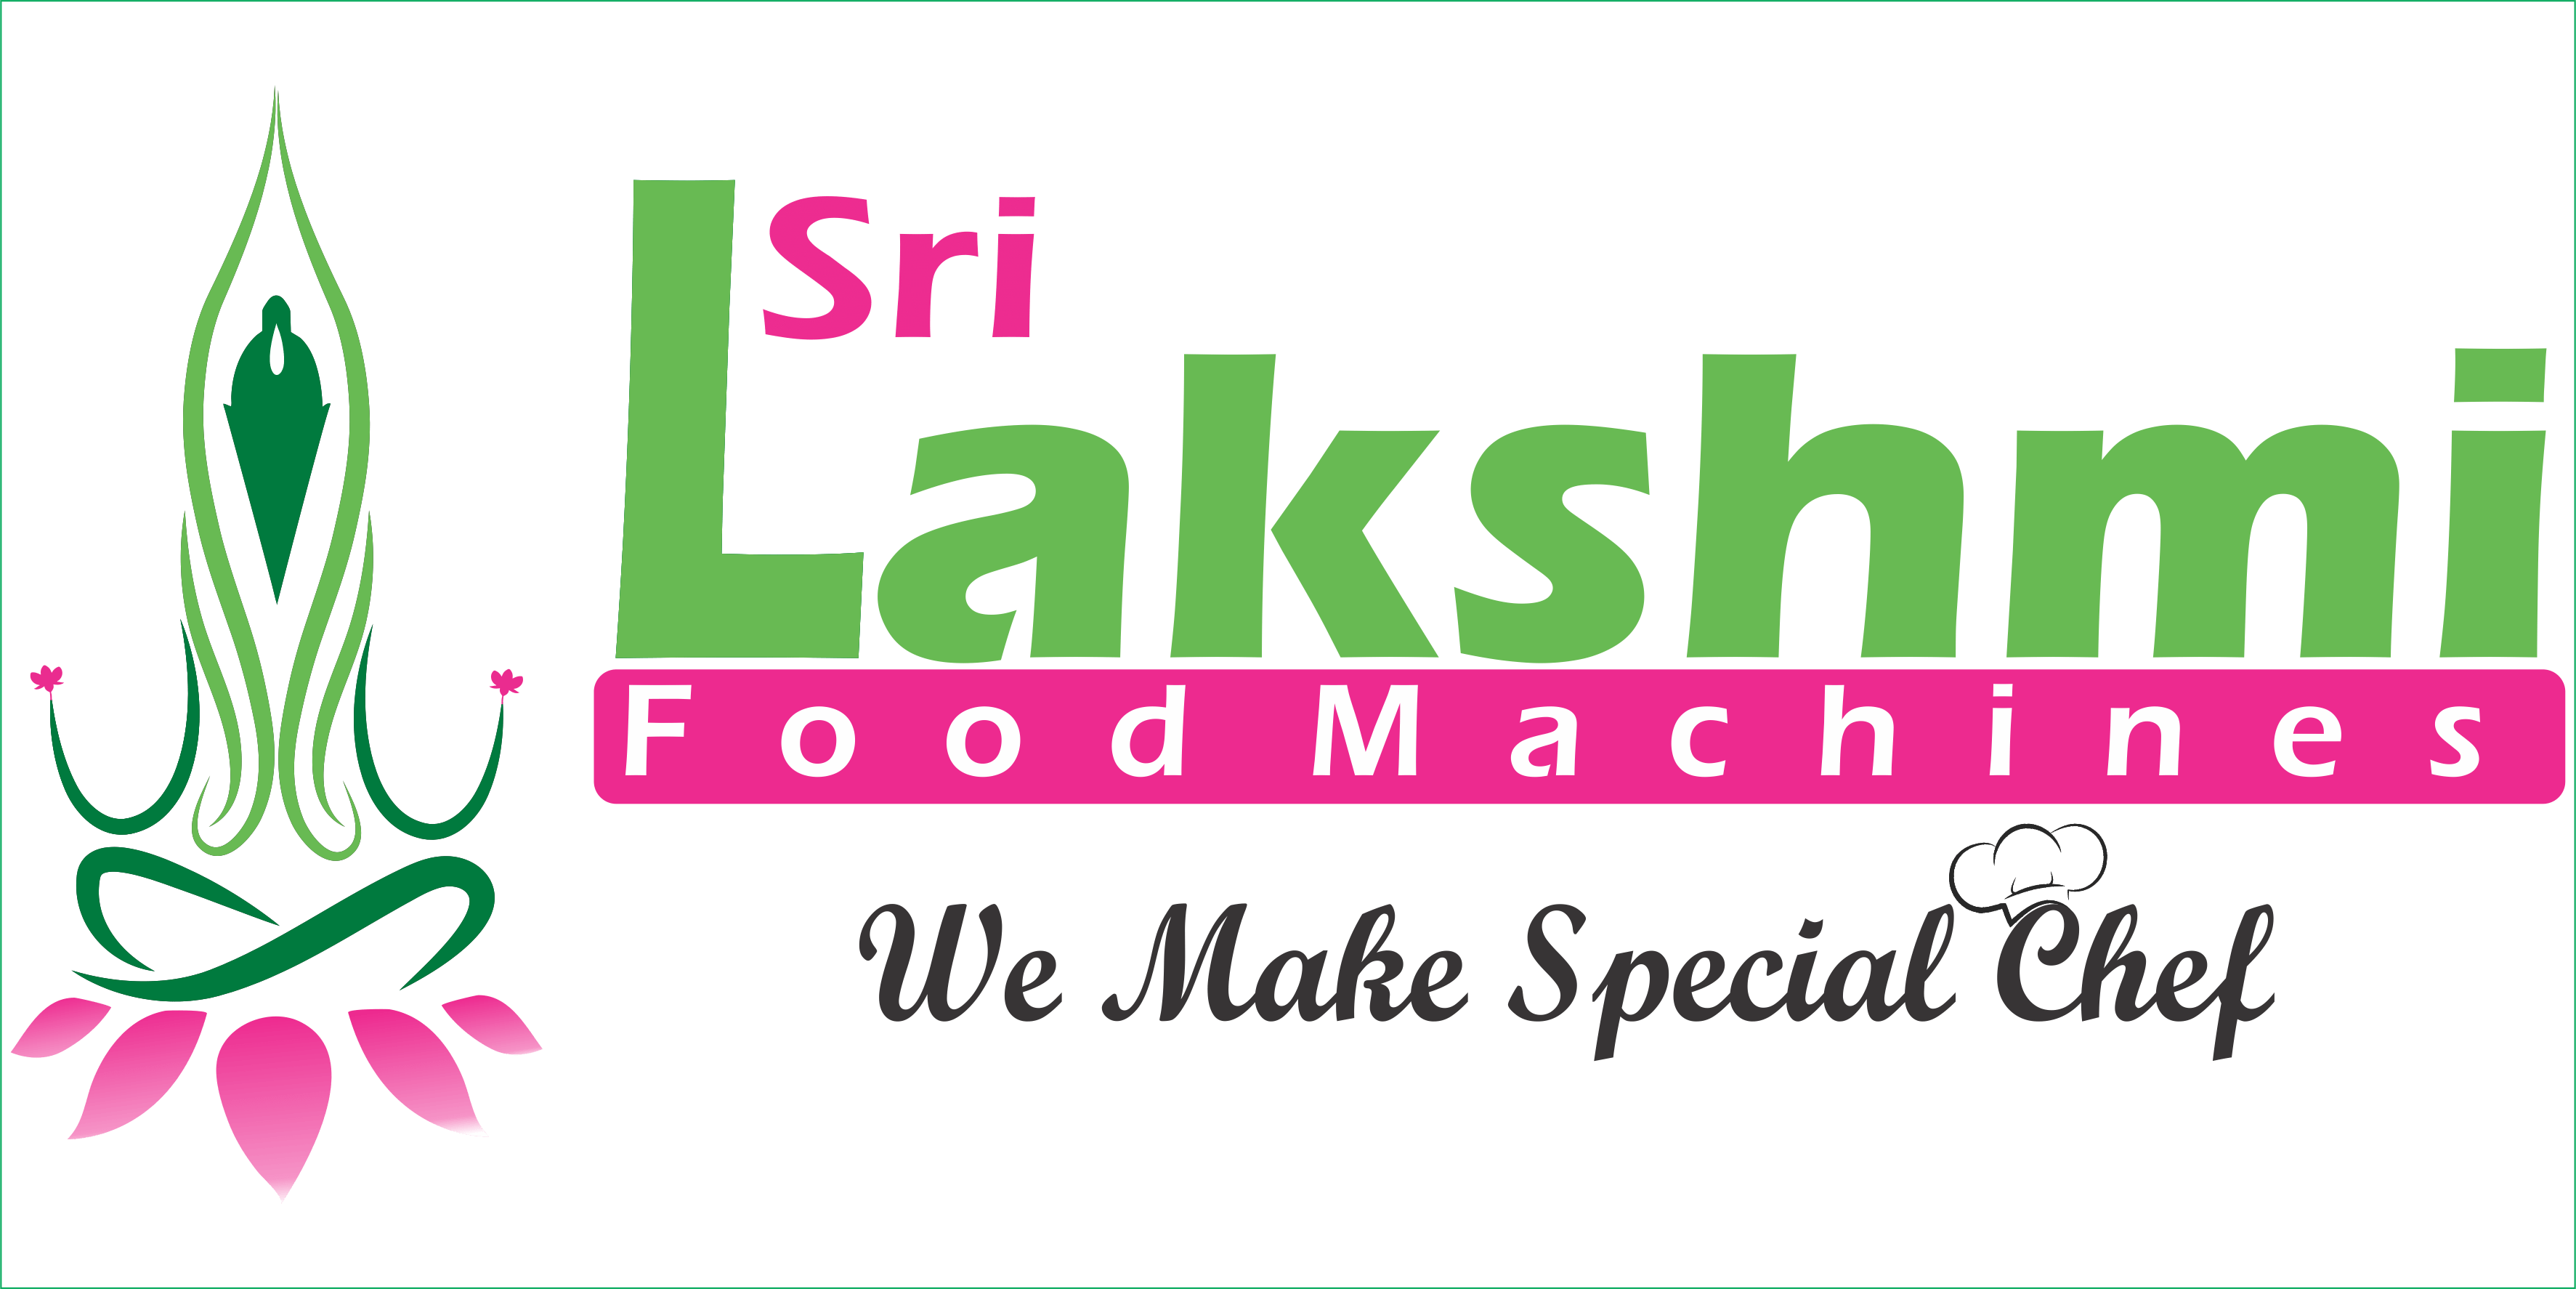 Sri lakshmi food machines